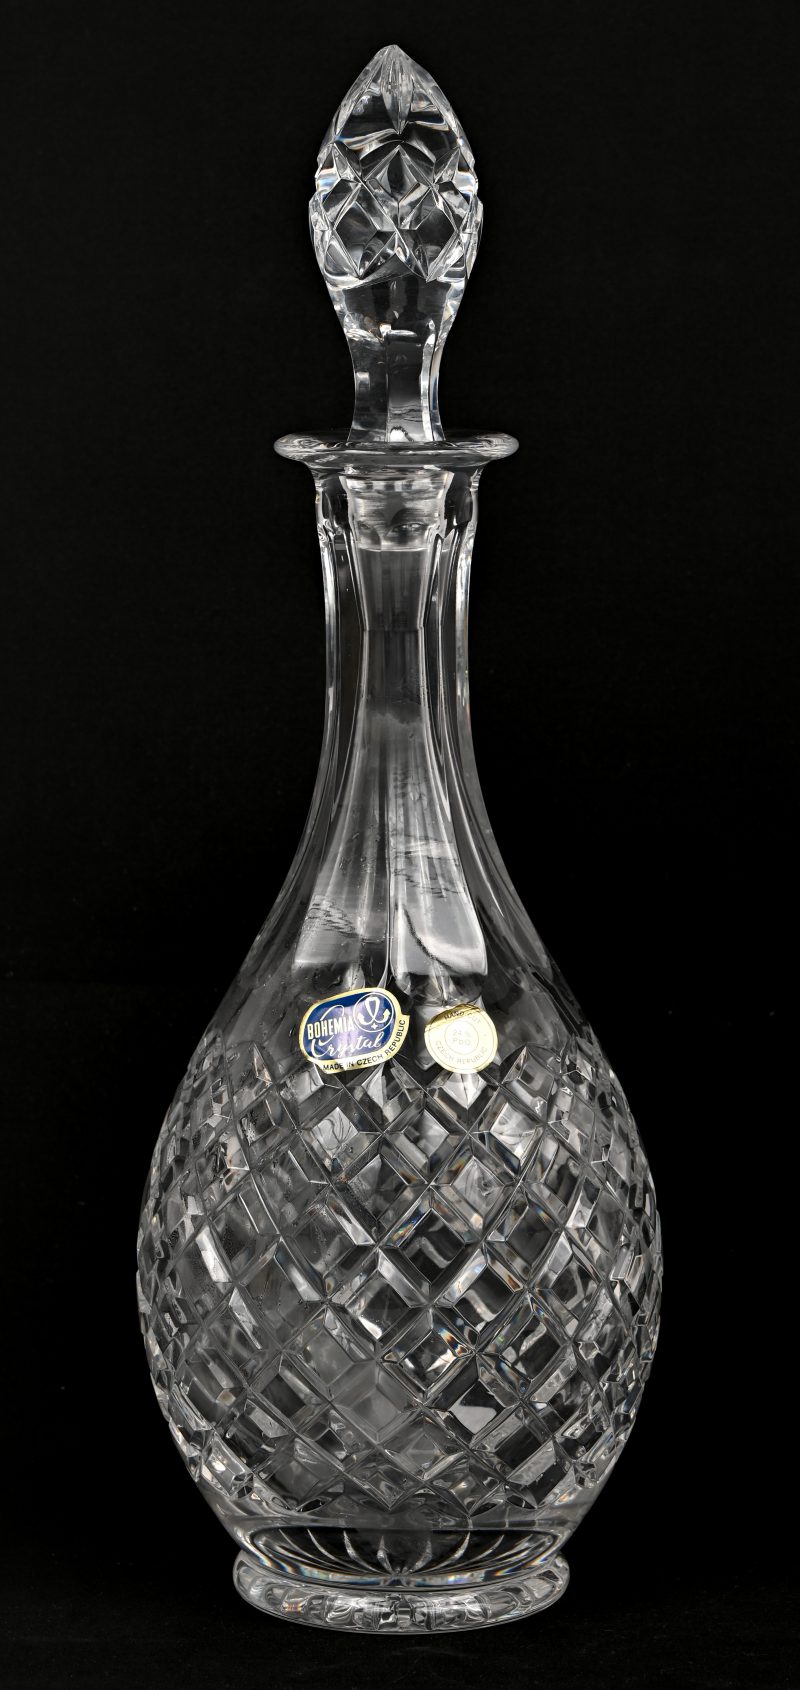 Een Boheems kristallen karaf, gemerkt met sticker ‘Bohemia Crystal’.